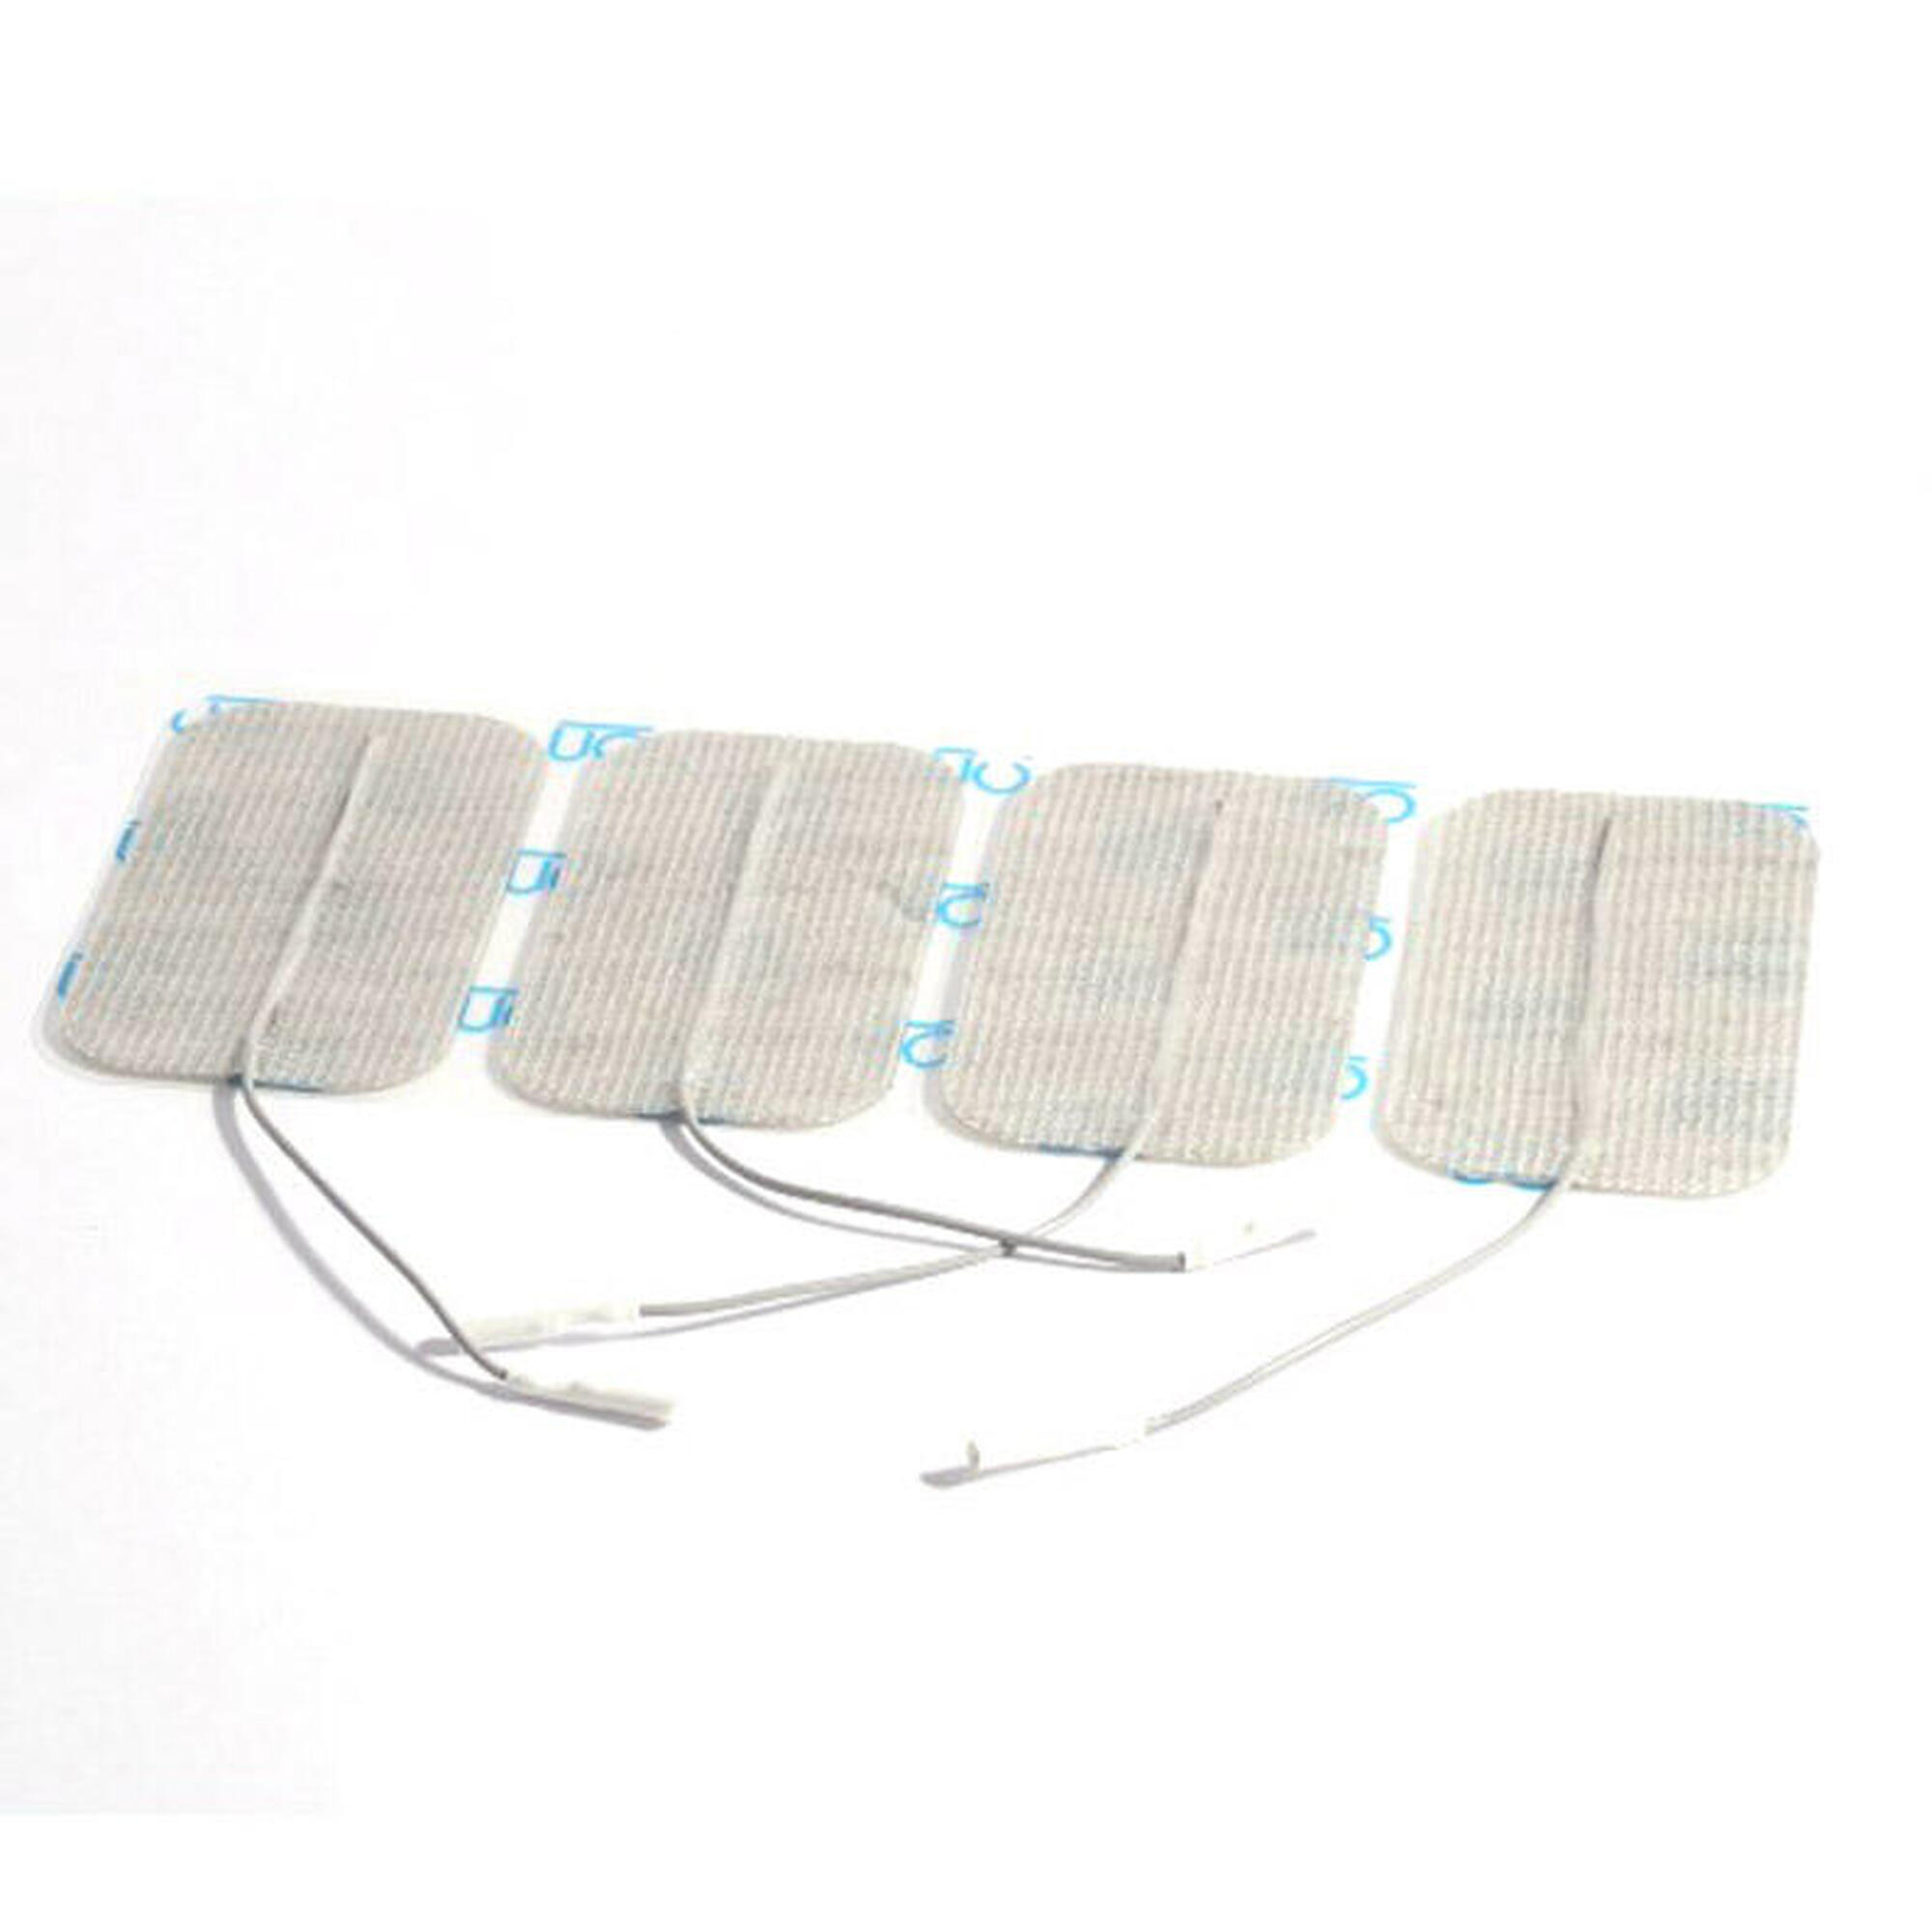 Globus MyoTrode Platinum 50 x 90mm Electrodes